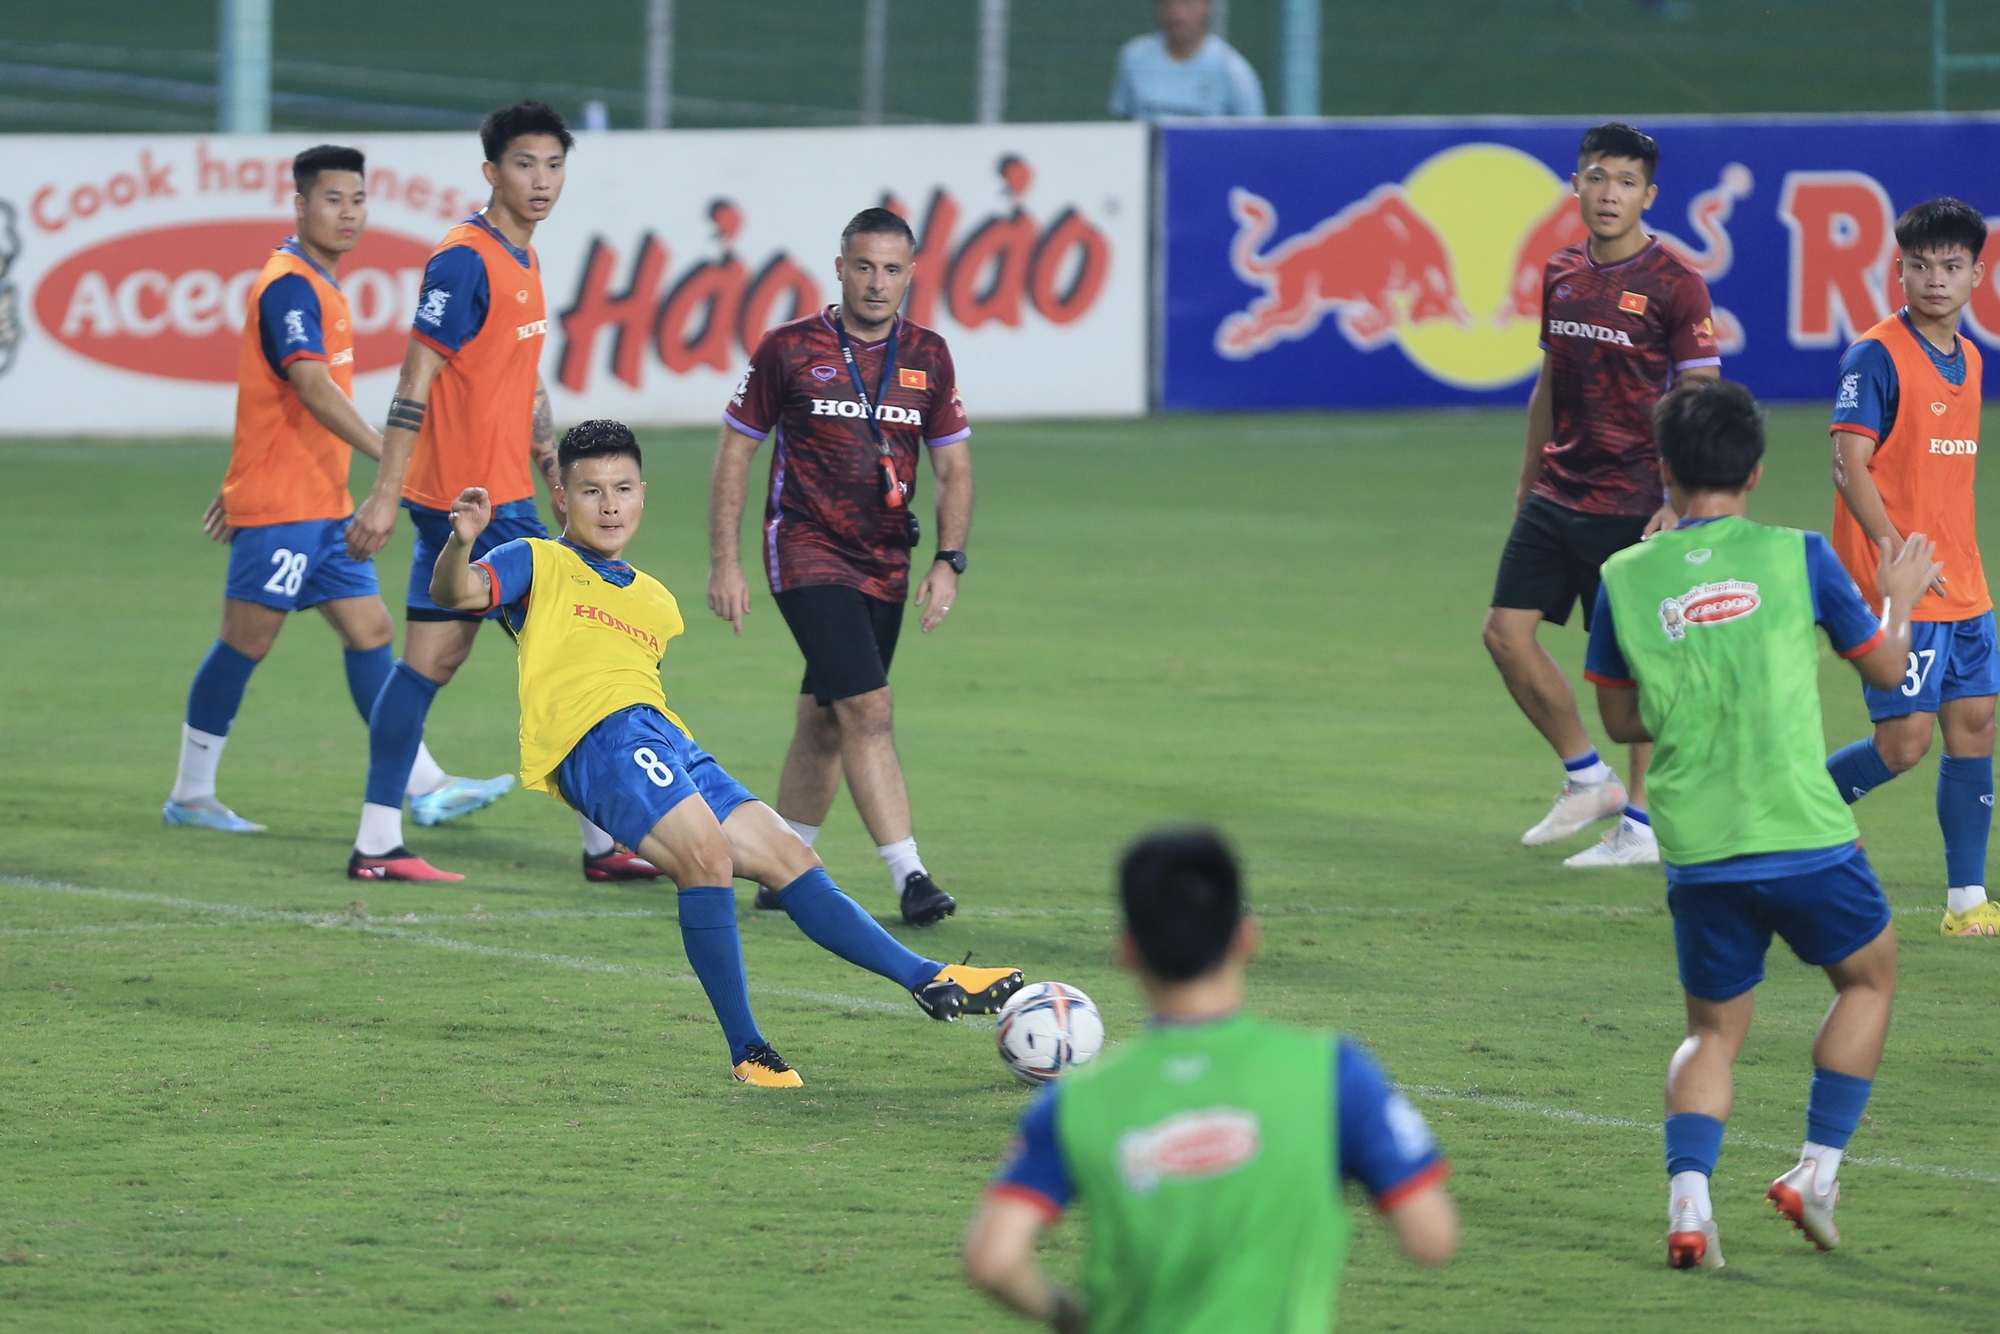 Đội tuyển Việt Nam đá đối kháng với U.23, Quang Hải đọ sức cùng đàn em - Ảnh 13.